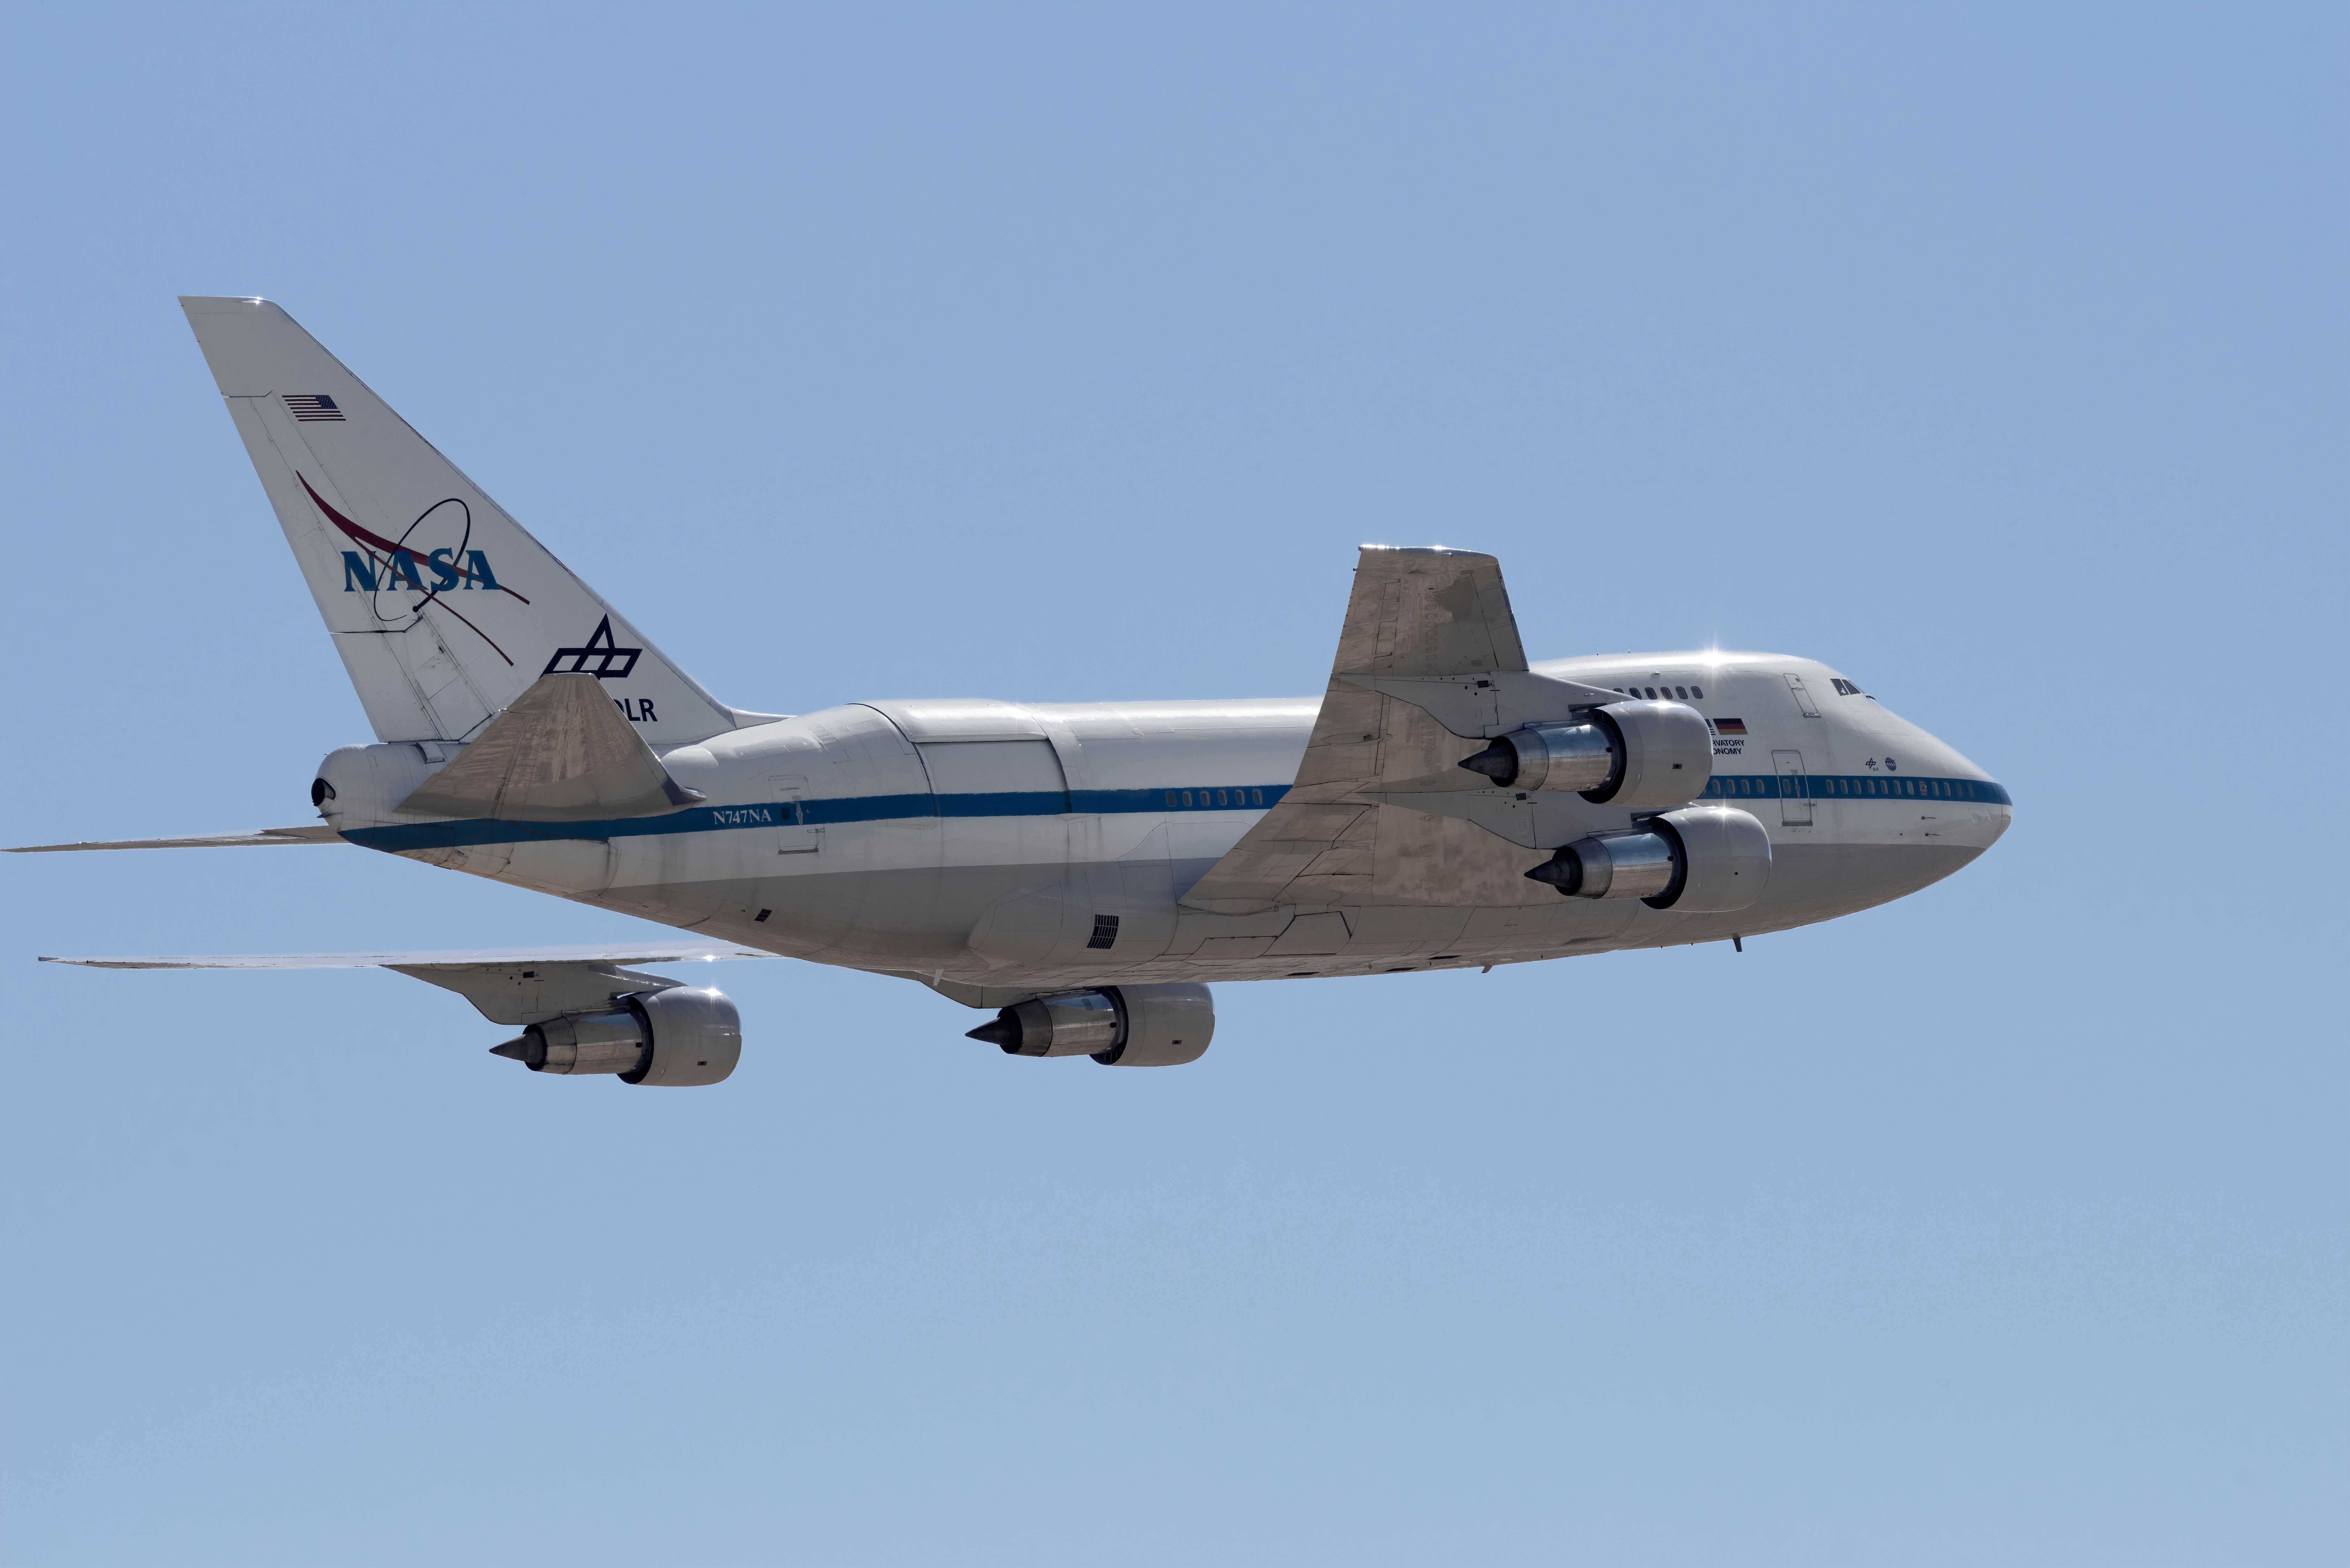 NASA's Boeing 747 SOFIA jet